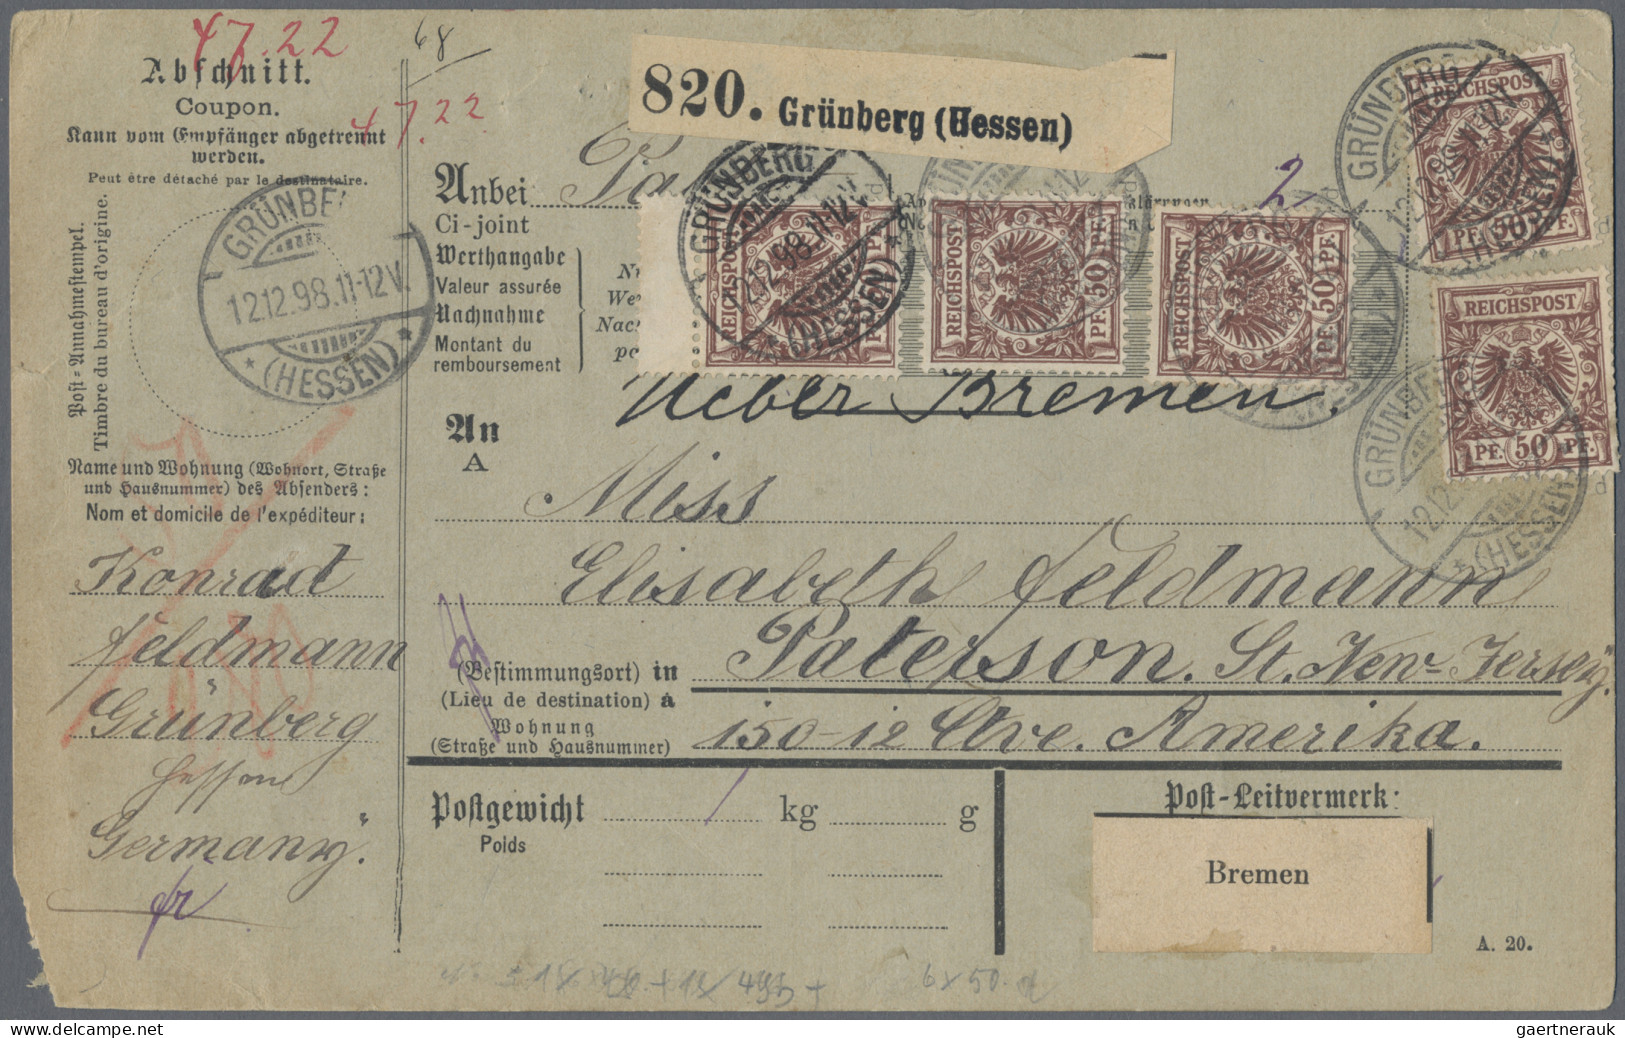 Deutsches Reich - Stempel: 1875/1904, vielseitige Sammlung von ca. 400 Briefen u